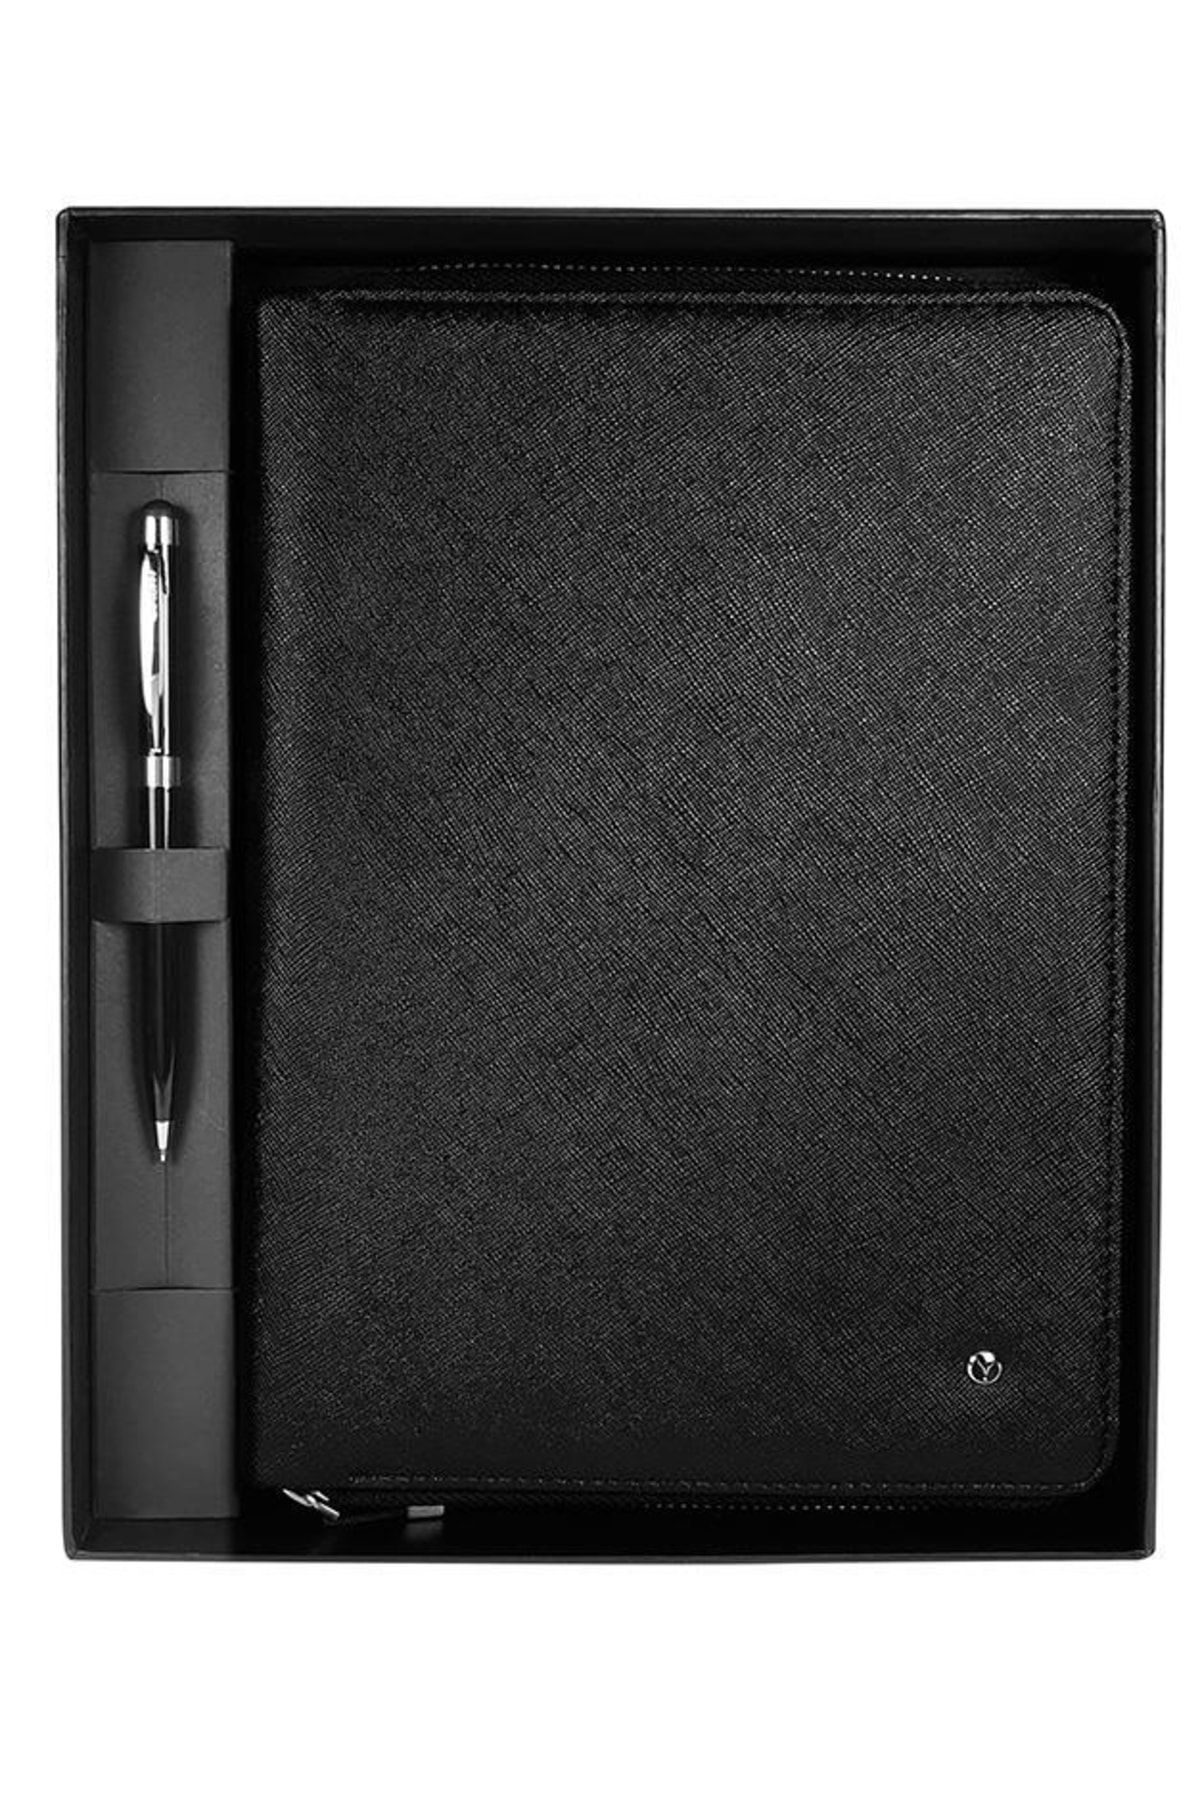 Scrikss Mini Portföy Tablet Kılıfı Siyah Dr8113 -